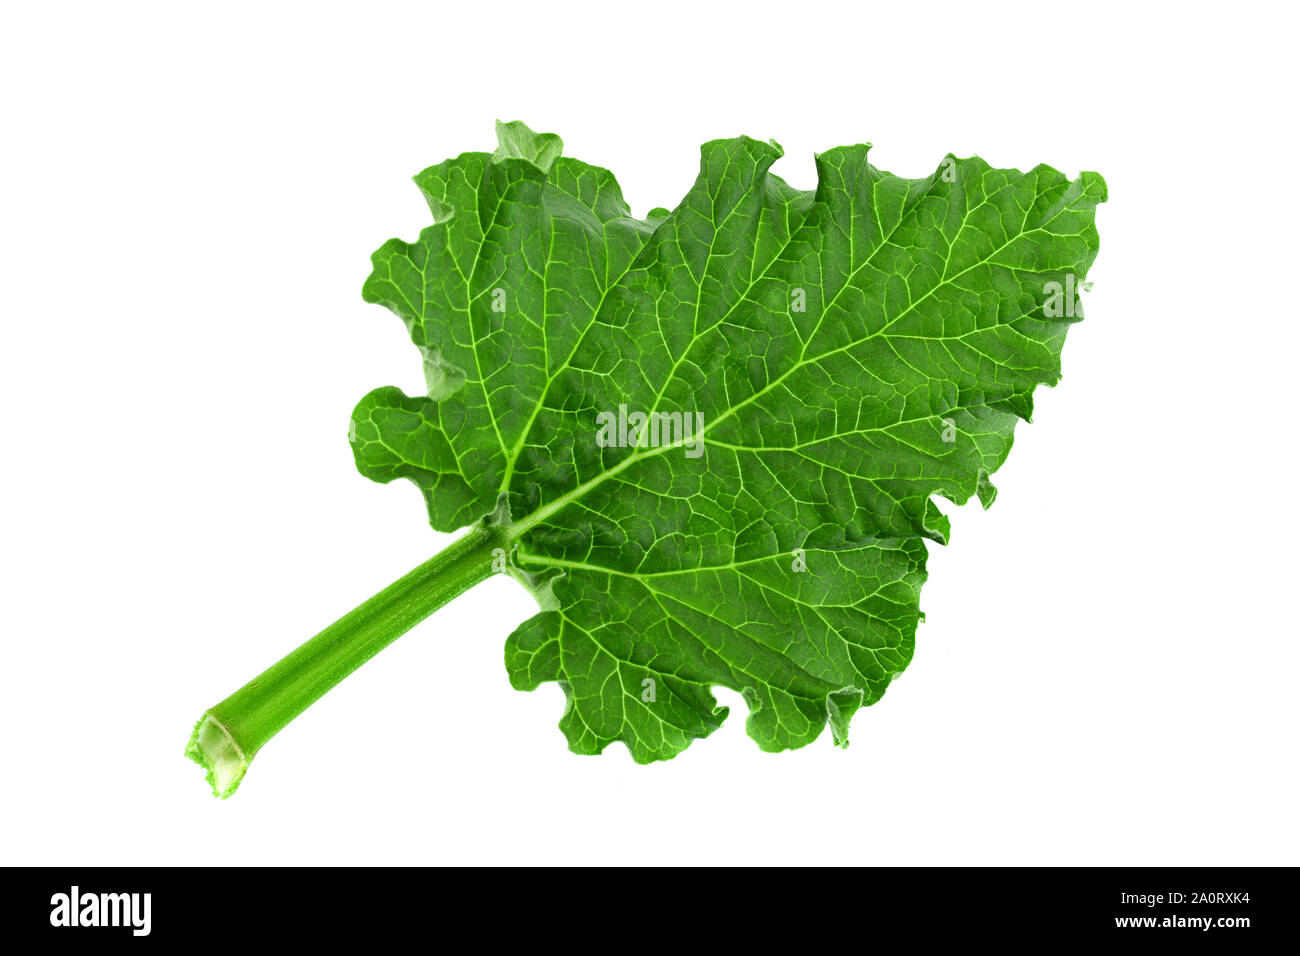 Rhubarb vegetable leaf isolated on white background Stock Photo